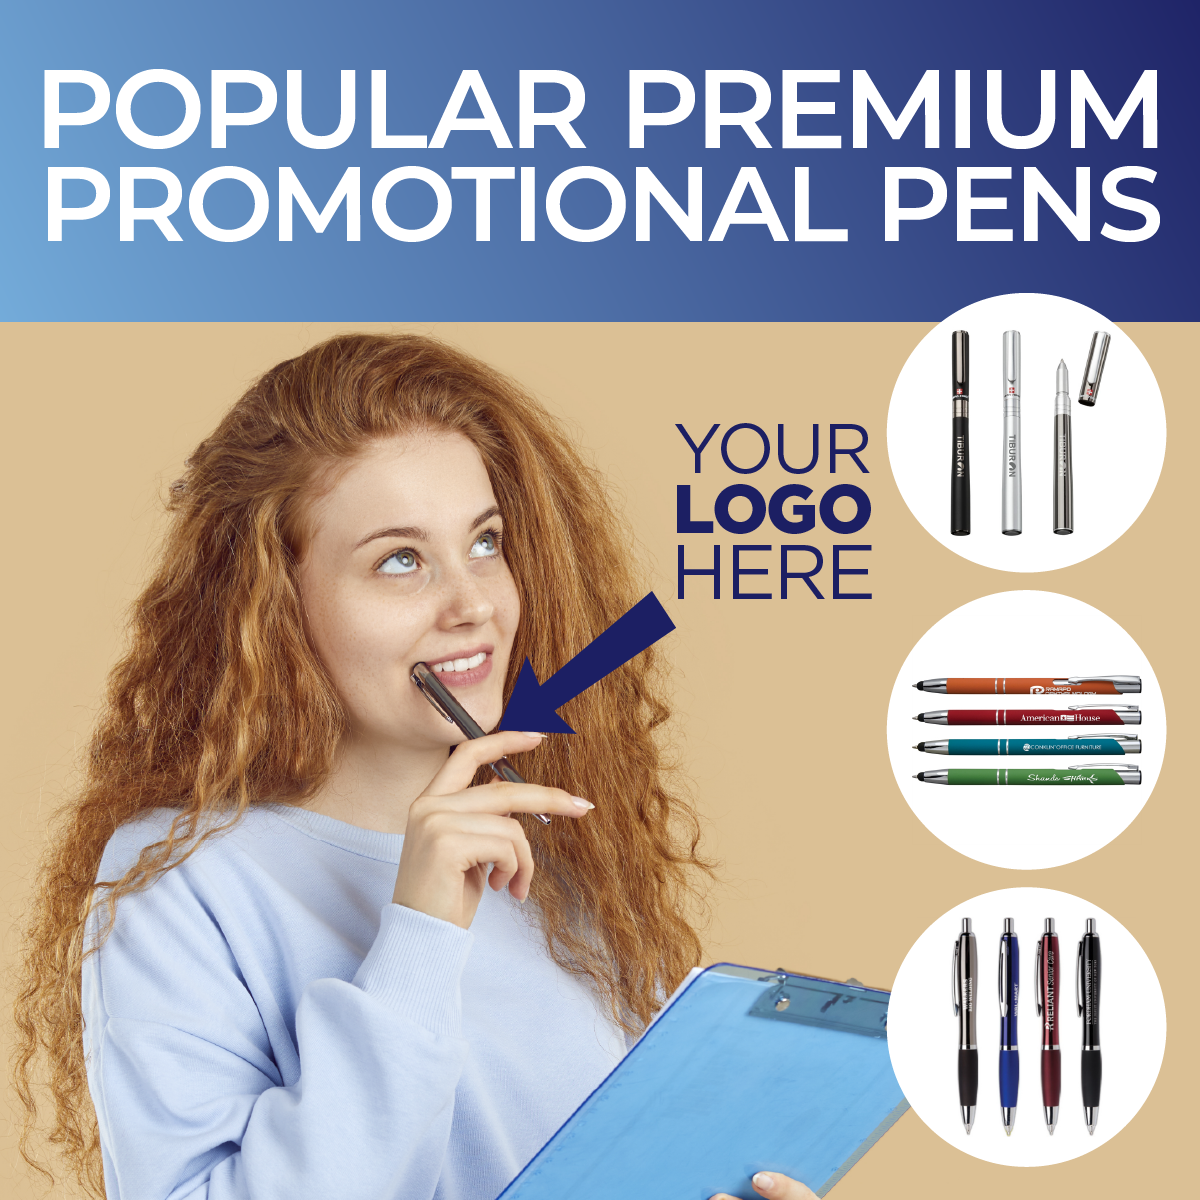 Popular premium promotional pens